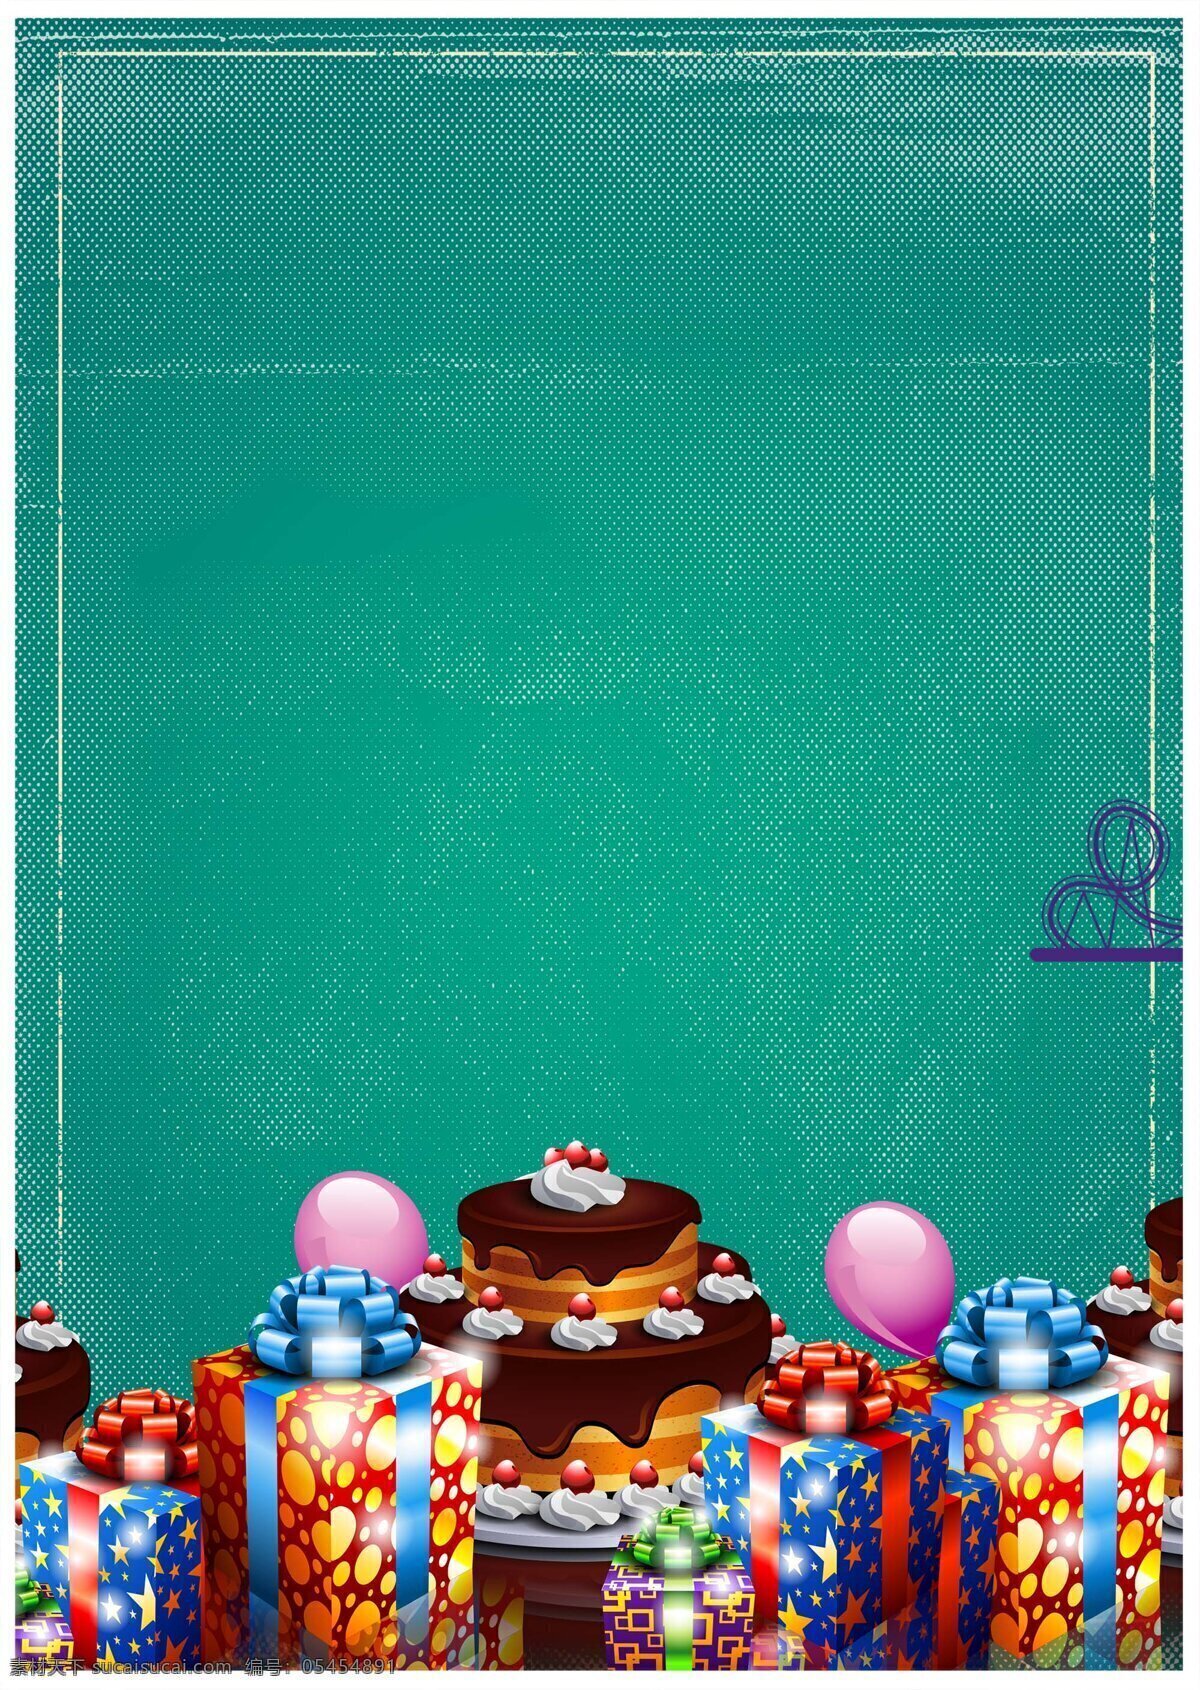 彩色 礼盒 蛋糕 蓝色 背景 花纹 星形 飘带 气球 生日蛋糕 蓝色海报 广告背景